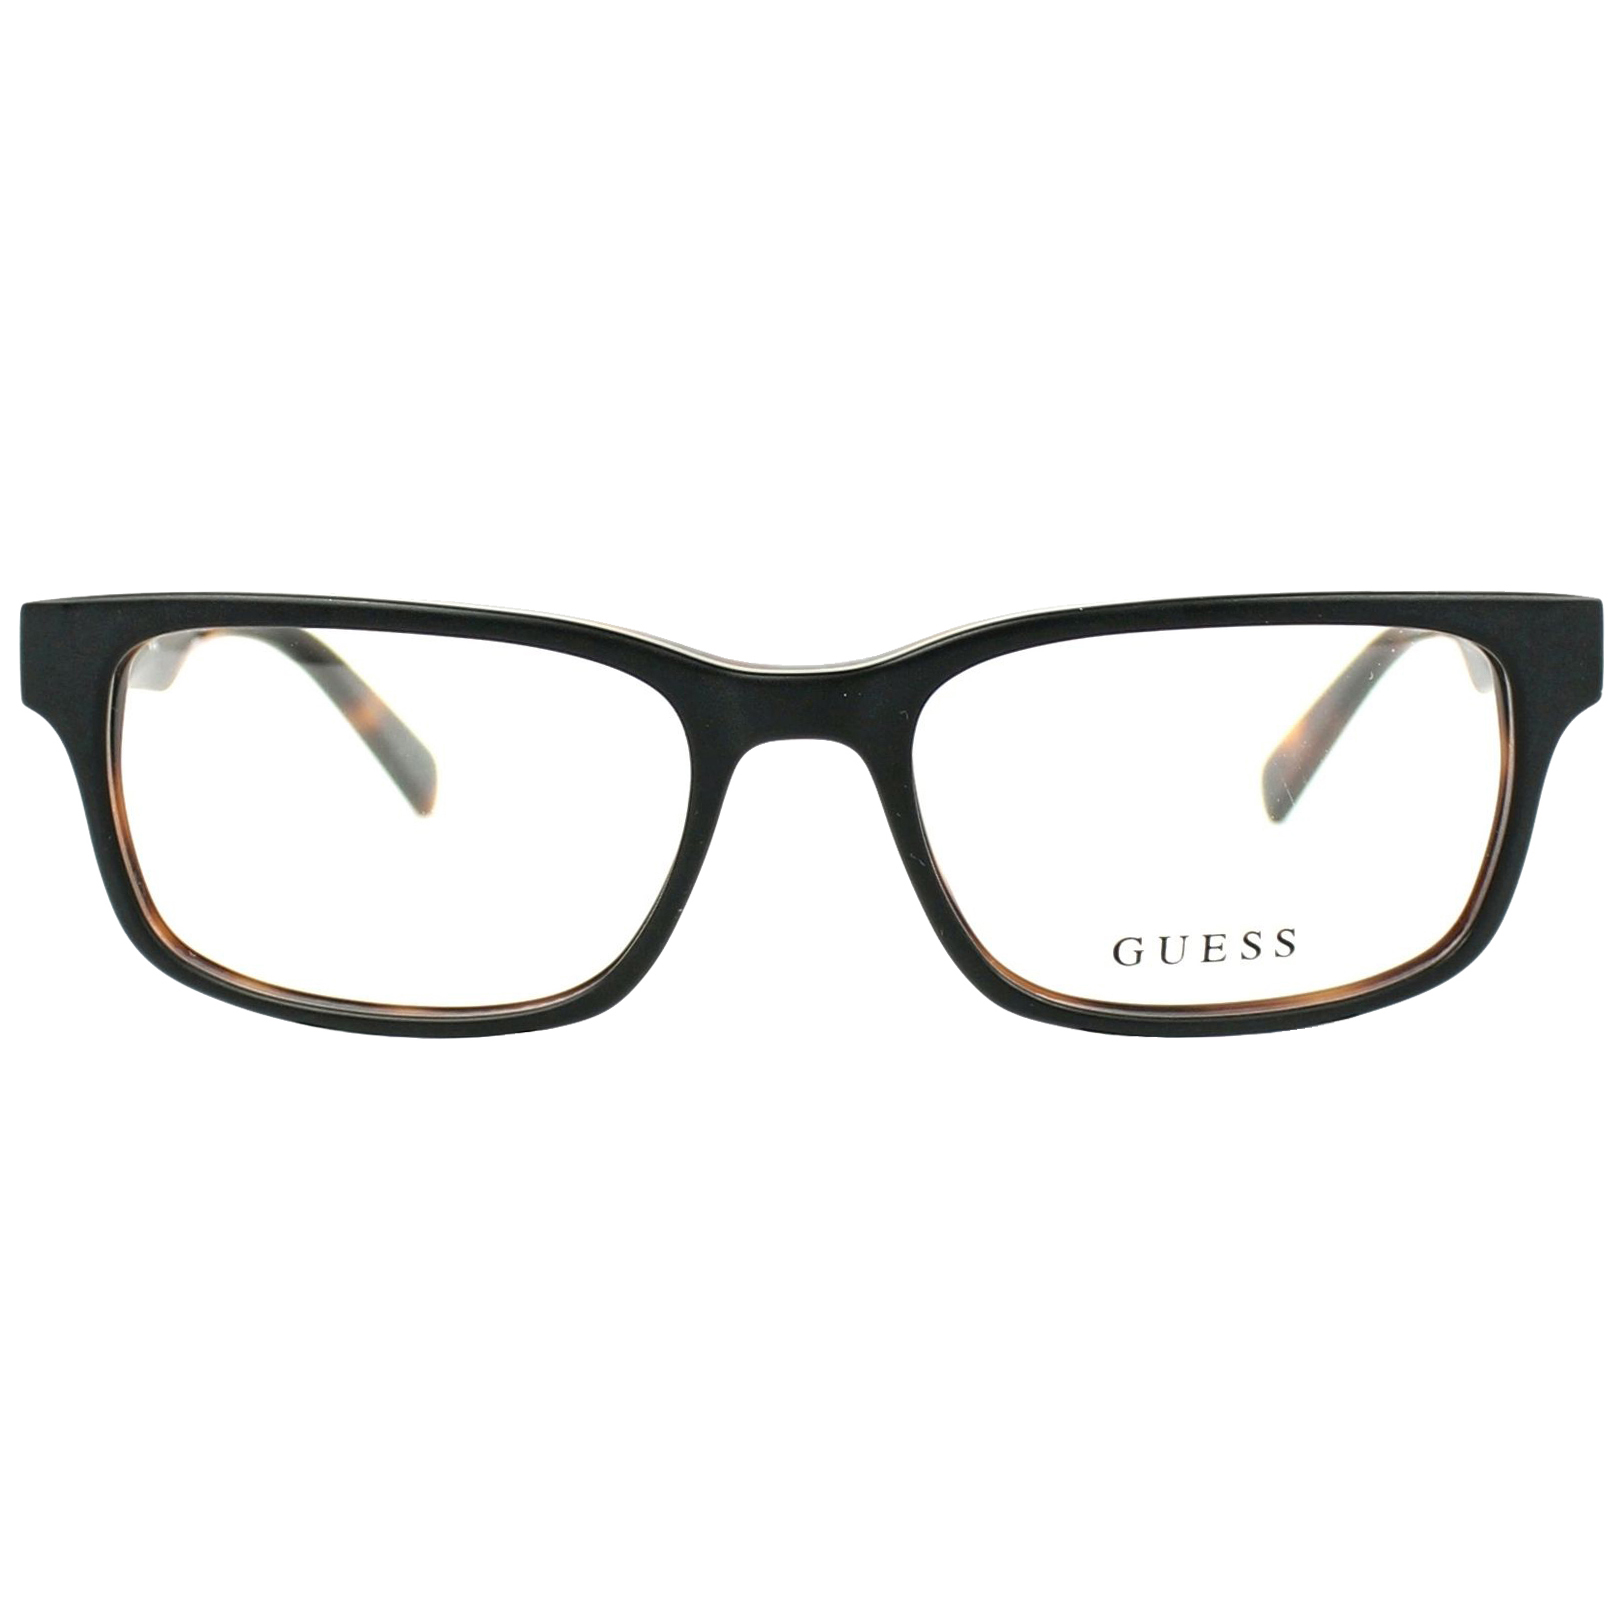 فریم عینک طبی مردانه گس مدل GU1934002 -  - 1